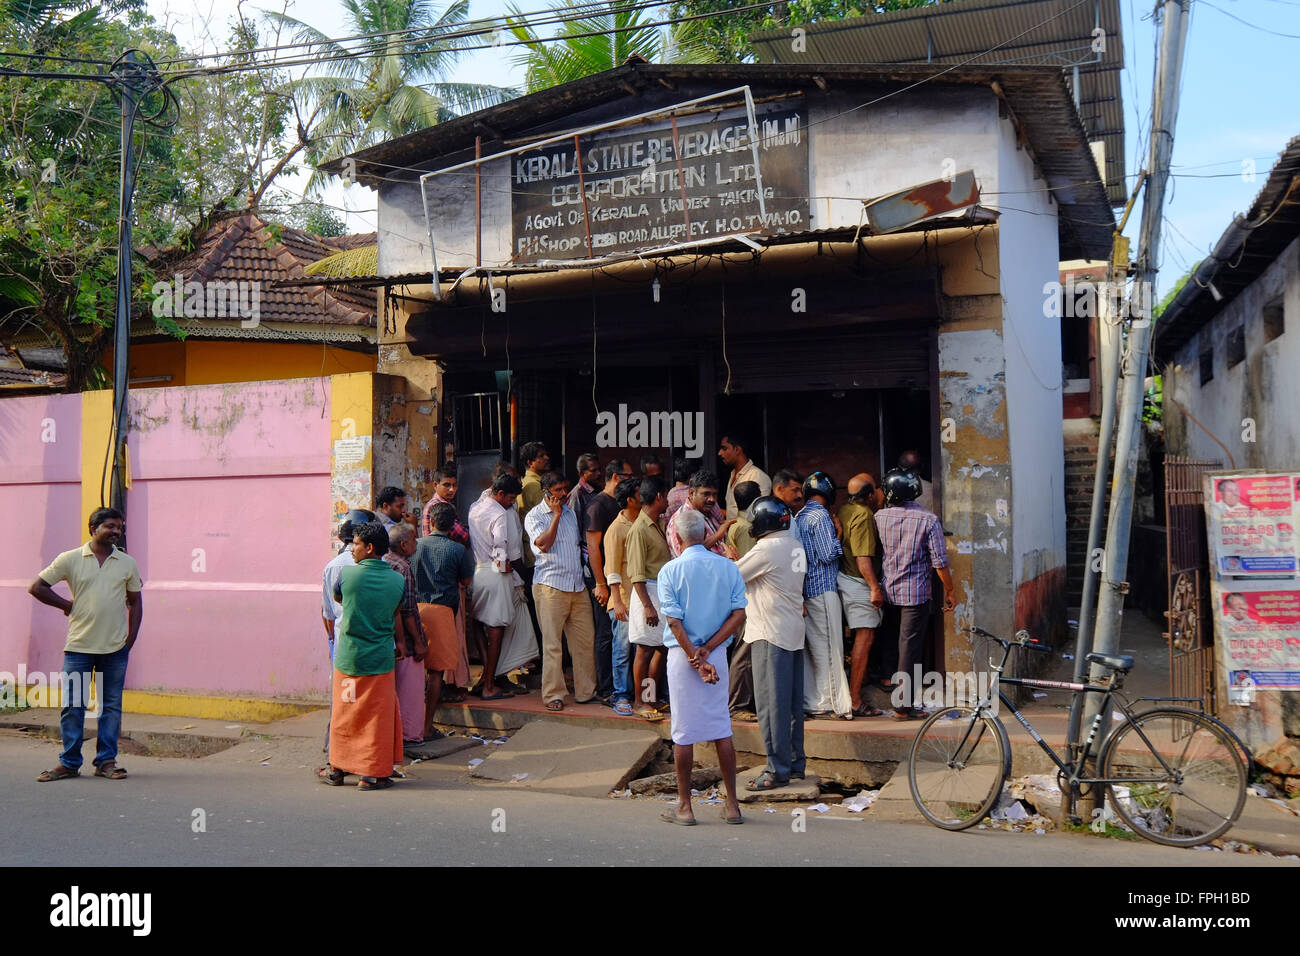 Eine Regierung lizenziert Spirituosengeschäft in Kerala, Indien Stockfoto